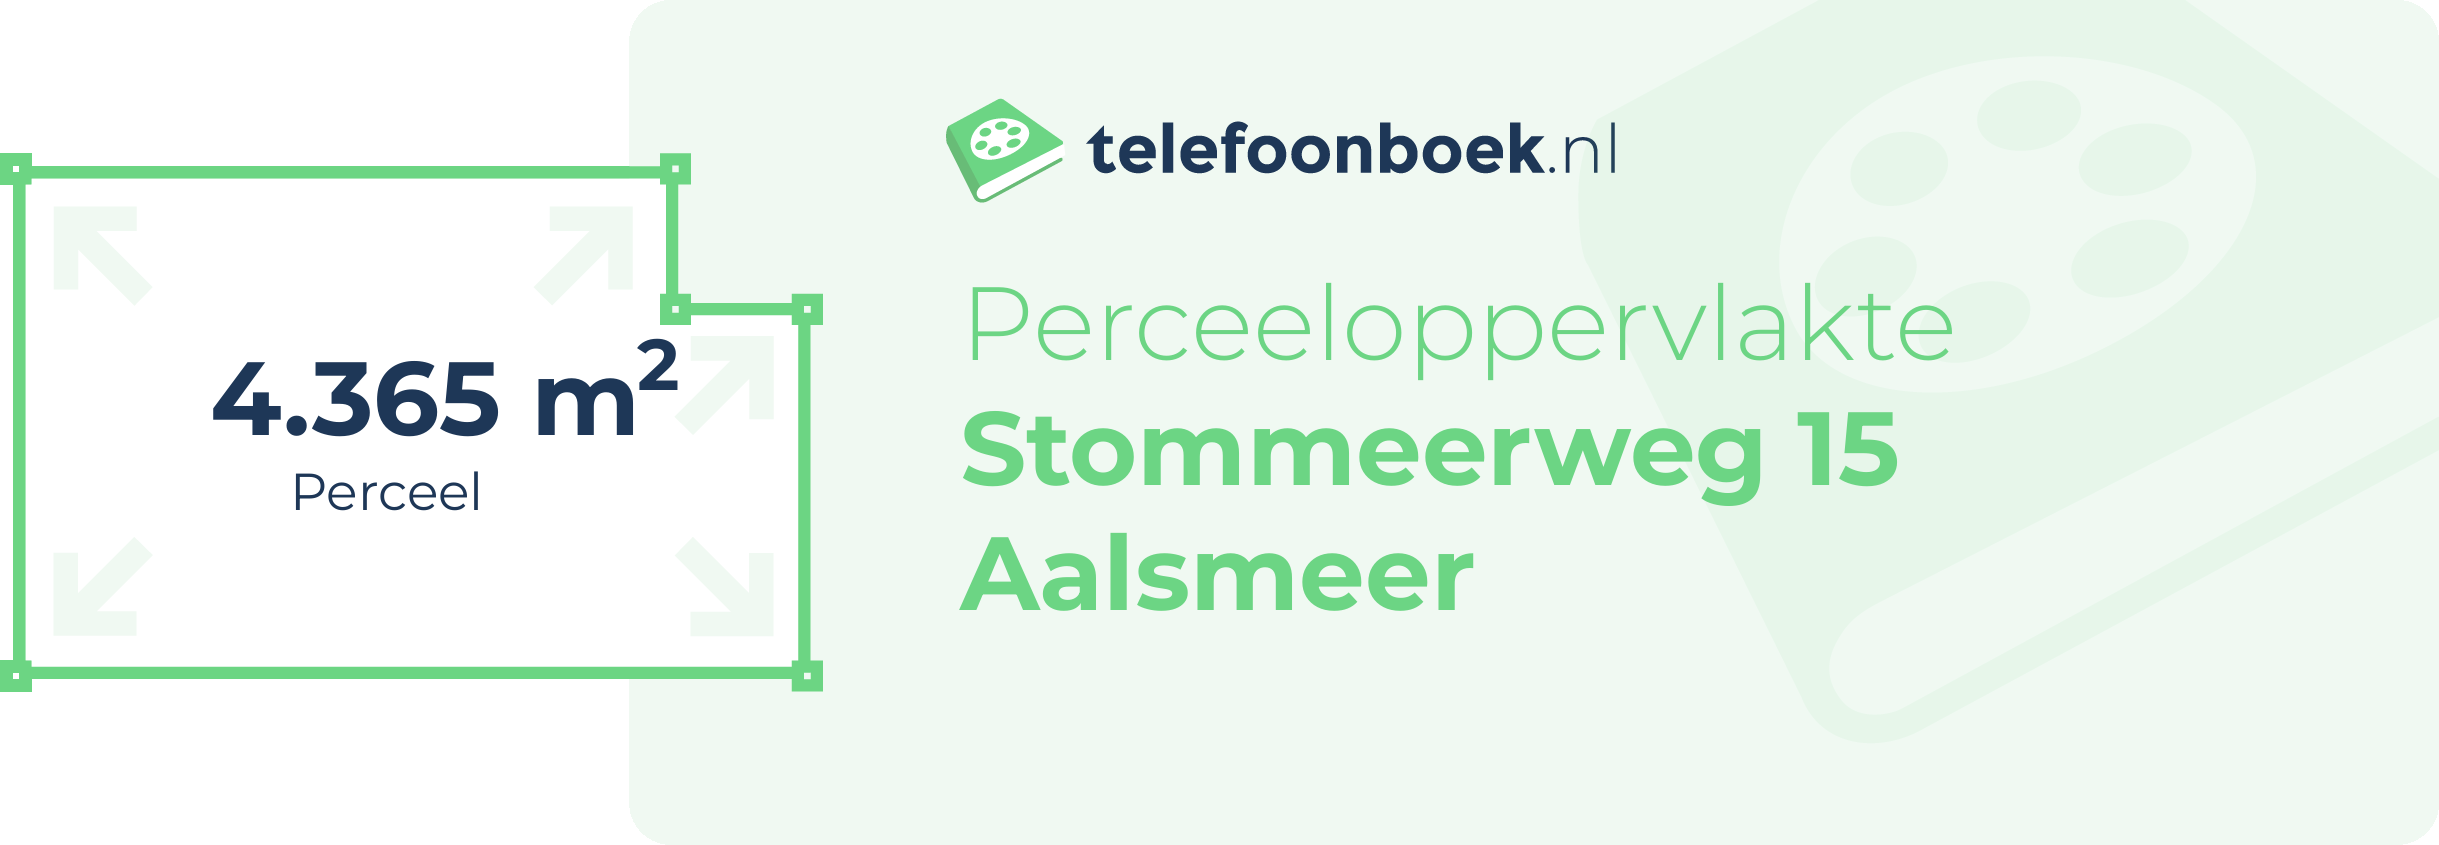 Perceeloppervlakte Stommeerweg 15 Aalsmeer